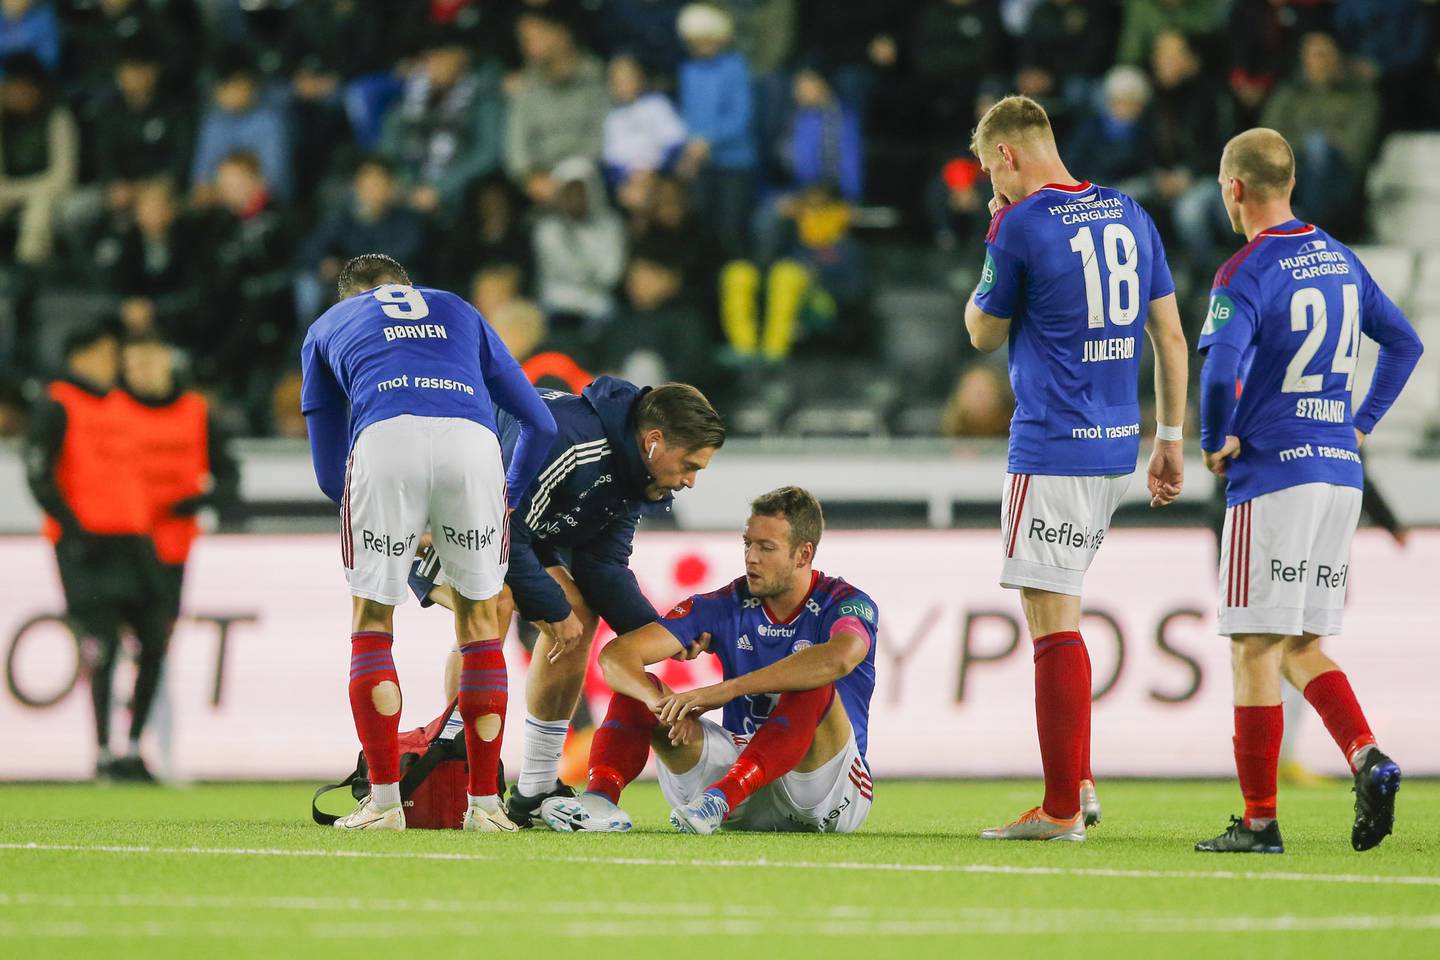 Vålerengas kaptein Jonatan Tollås Nation måtte forlate banen etter 26 minutter.